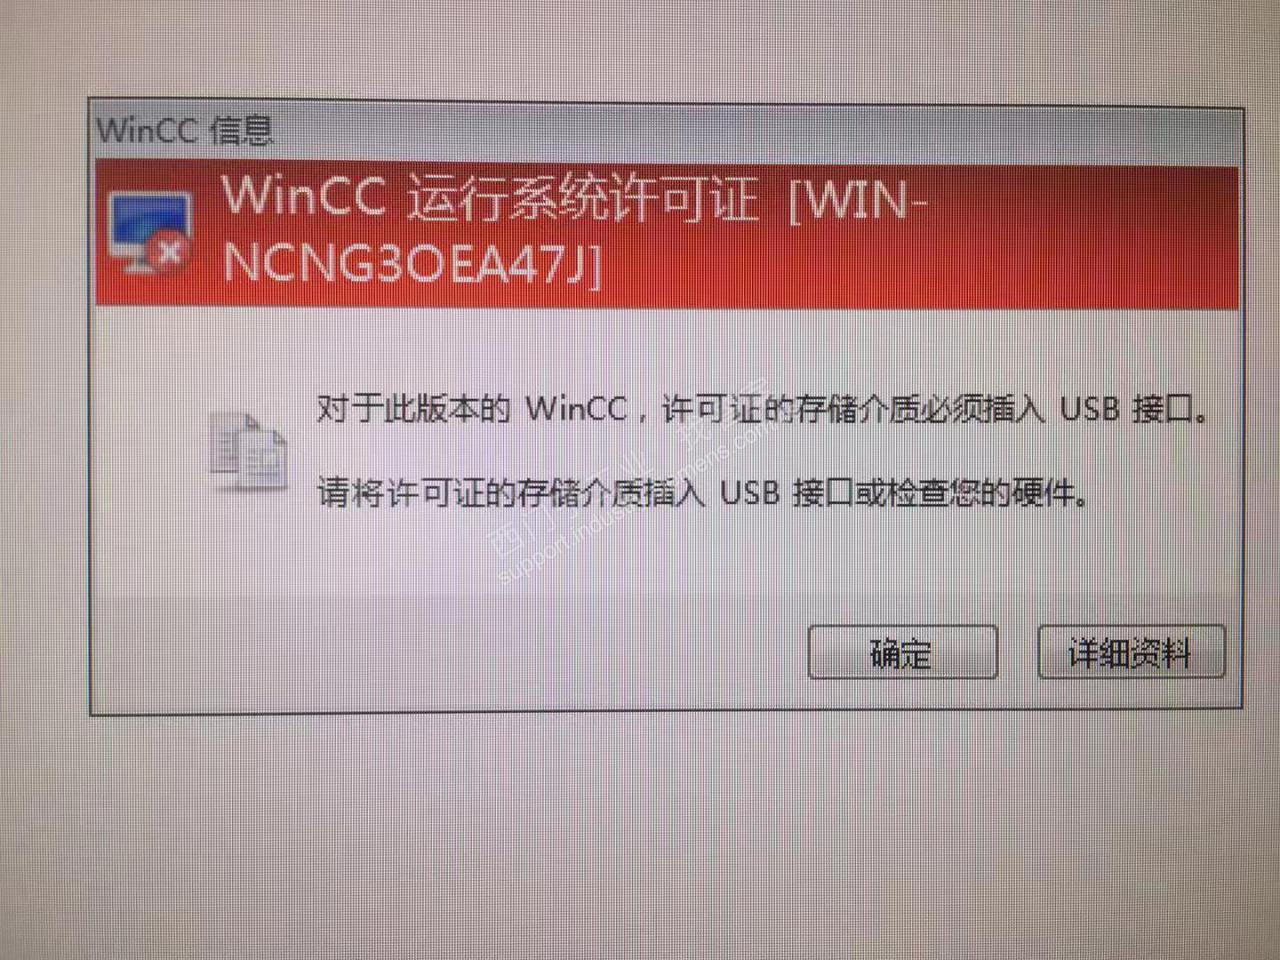 WINCC 7.4SP1提示USB狗缺少许可证